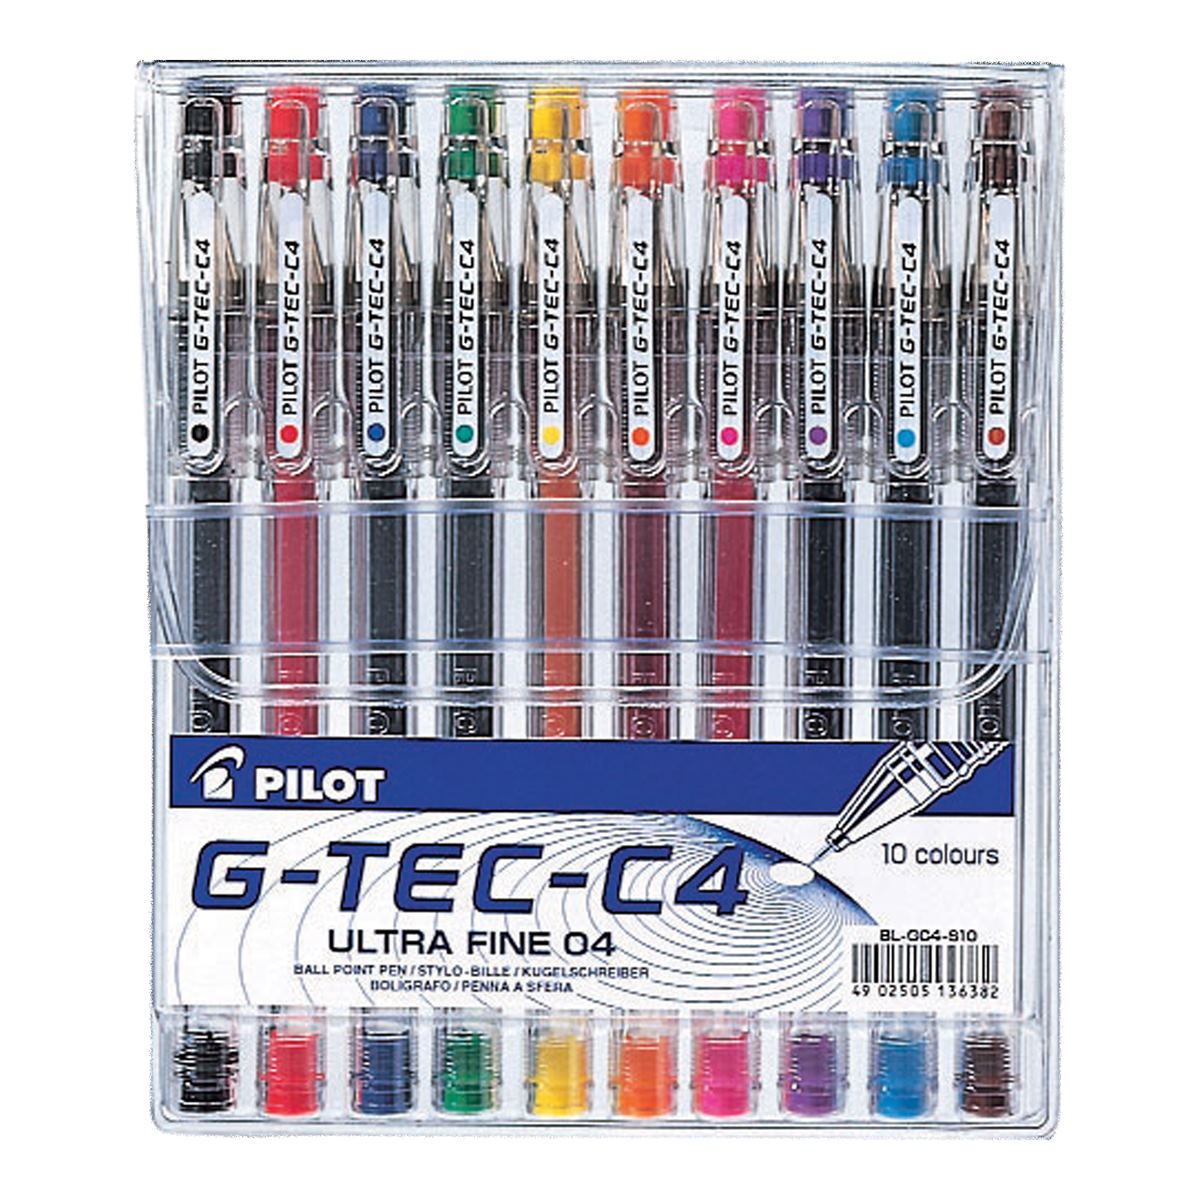 Pilot G-Tec C4 Microtip Rollerballs - Pack of 10